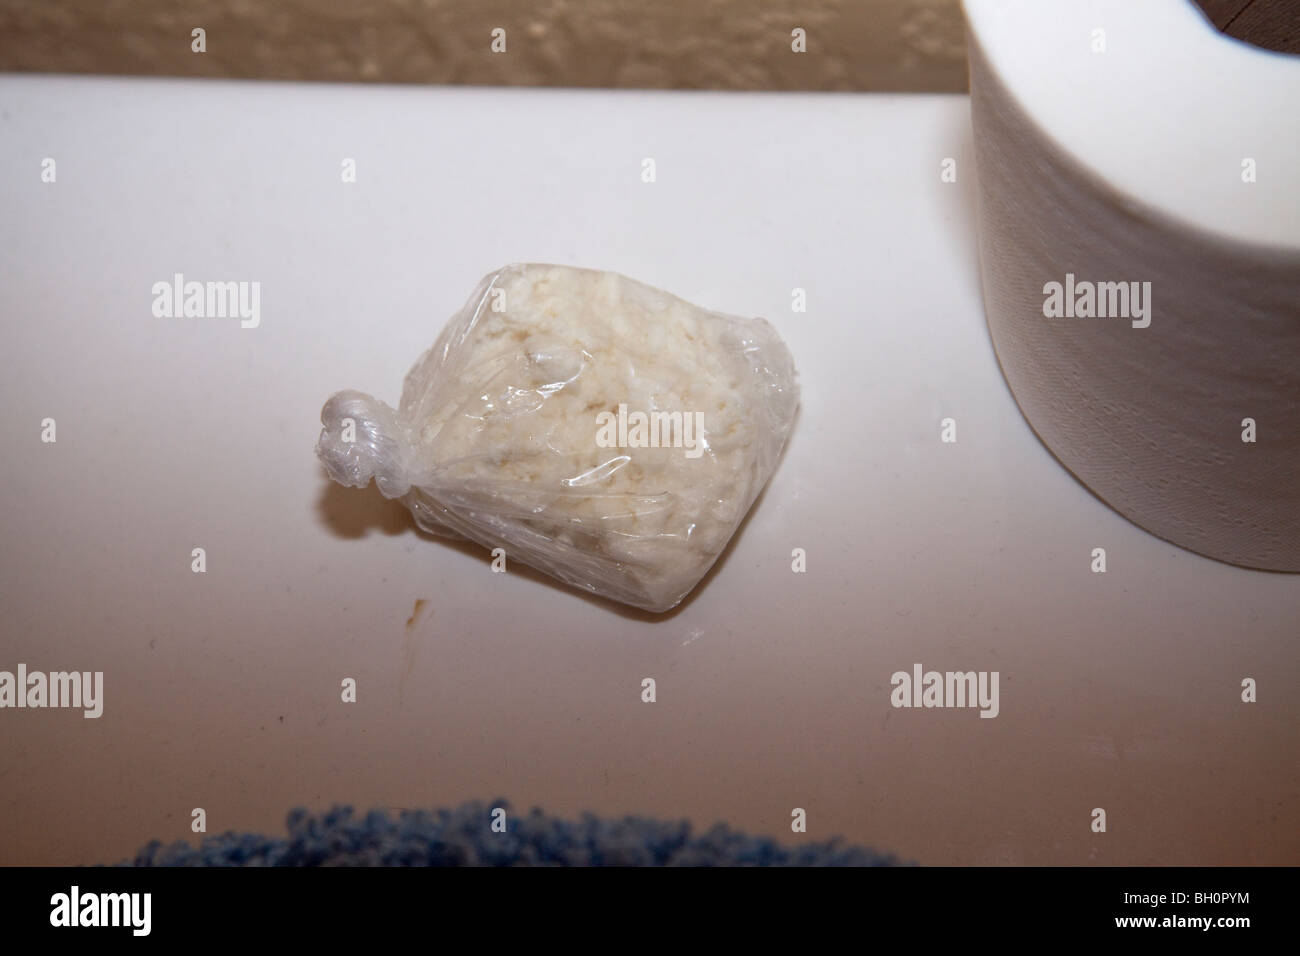 Betäubungsmittel im Bad gefunden. Drogen im Zusammenhang mit Durchsuchungsbefehl. Crack-Kokain. Stockfoto